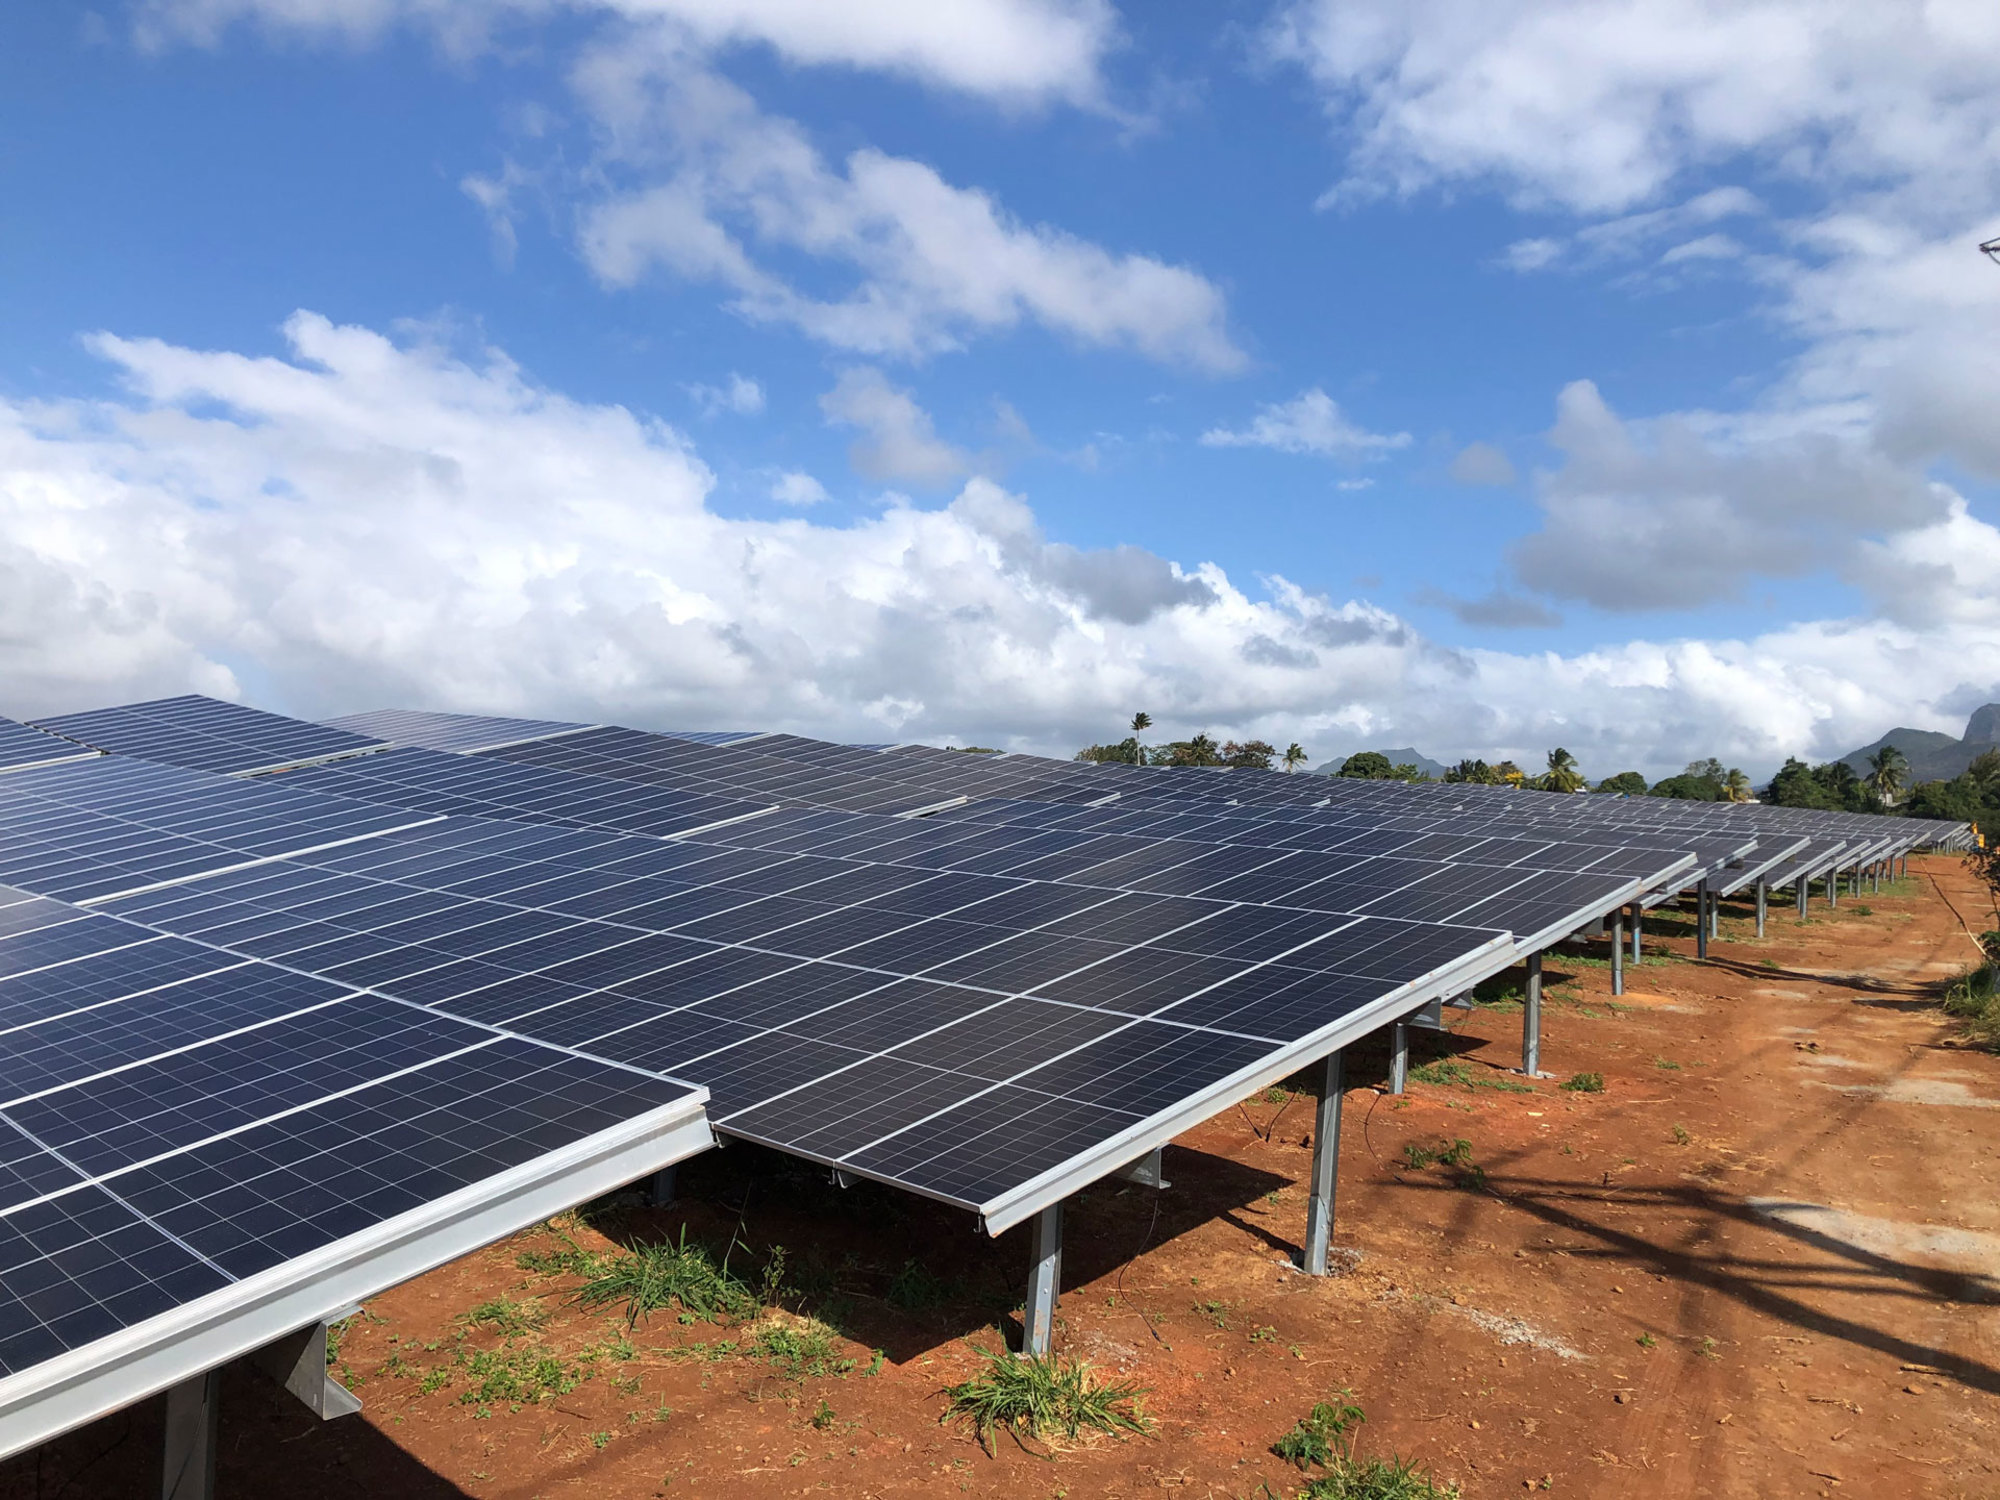 aste champ solaire avec des rangées de panneaux photovoltaïques sur structures métalliques, réalisé par Le Triangle, intégré dans un paysage agricole.